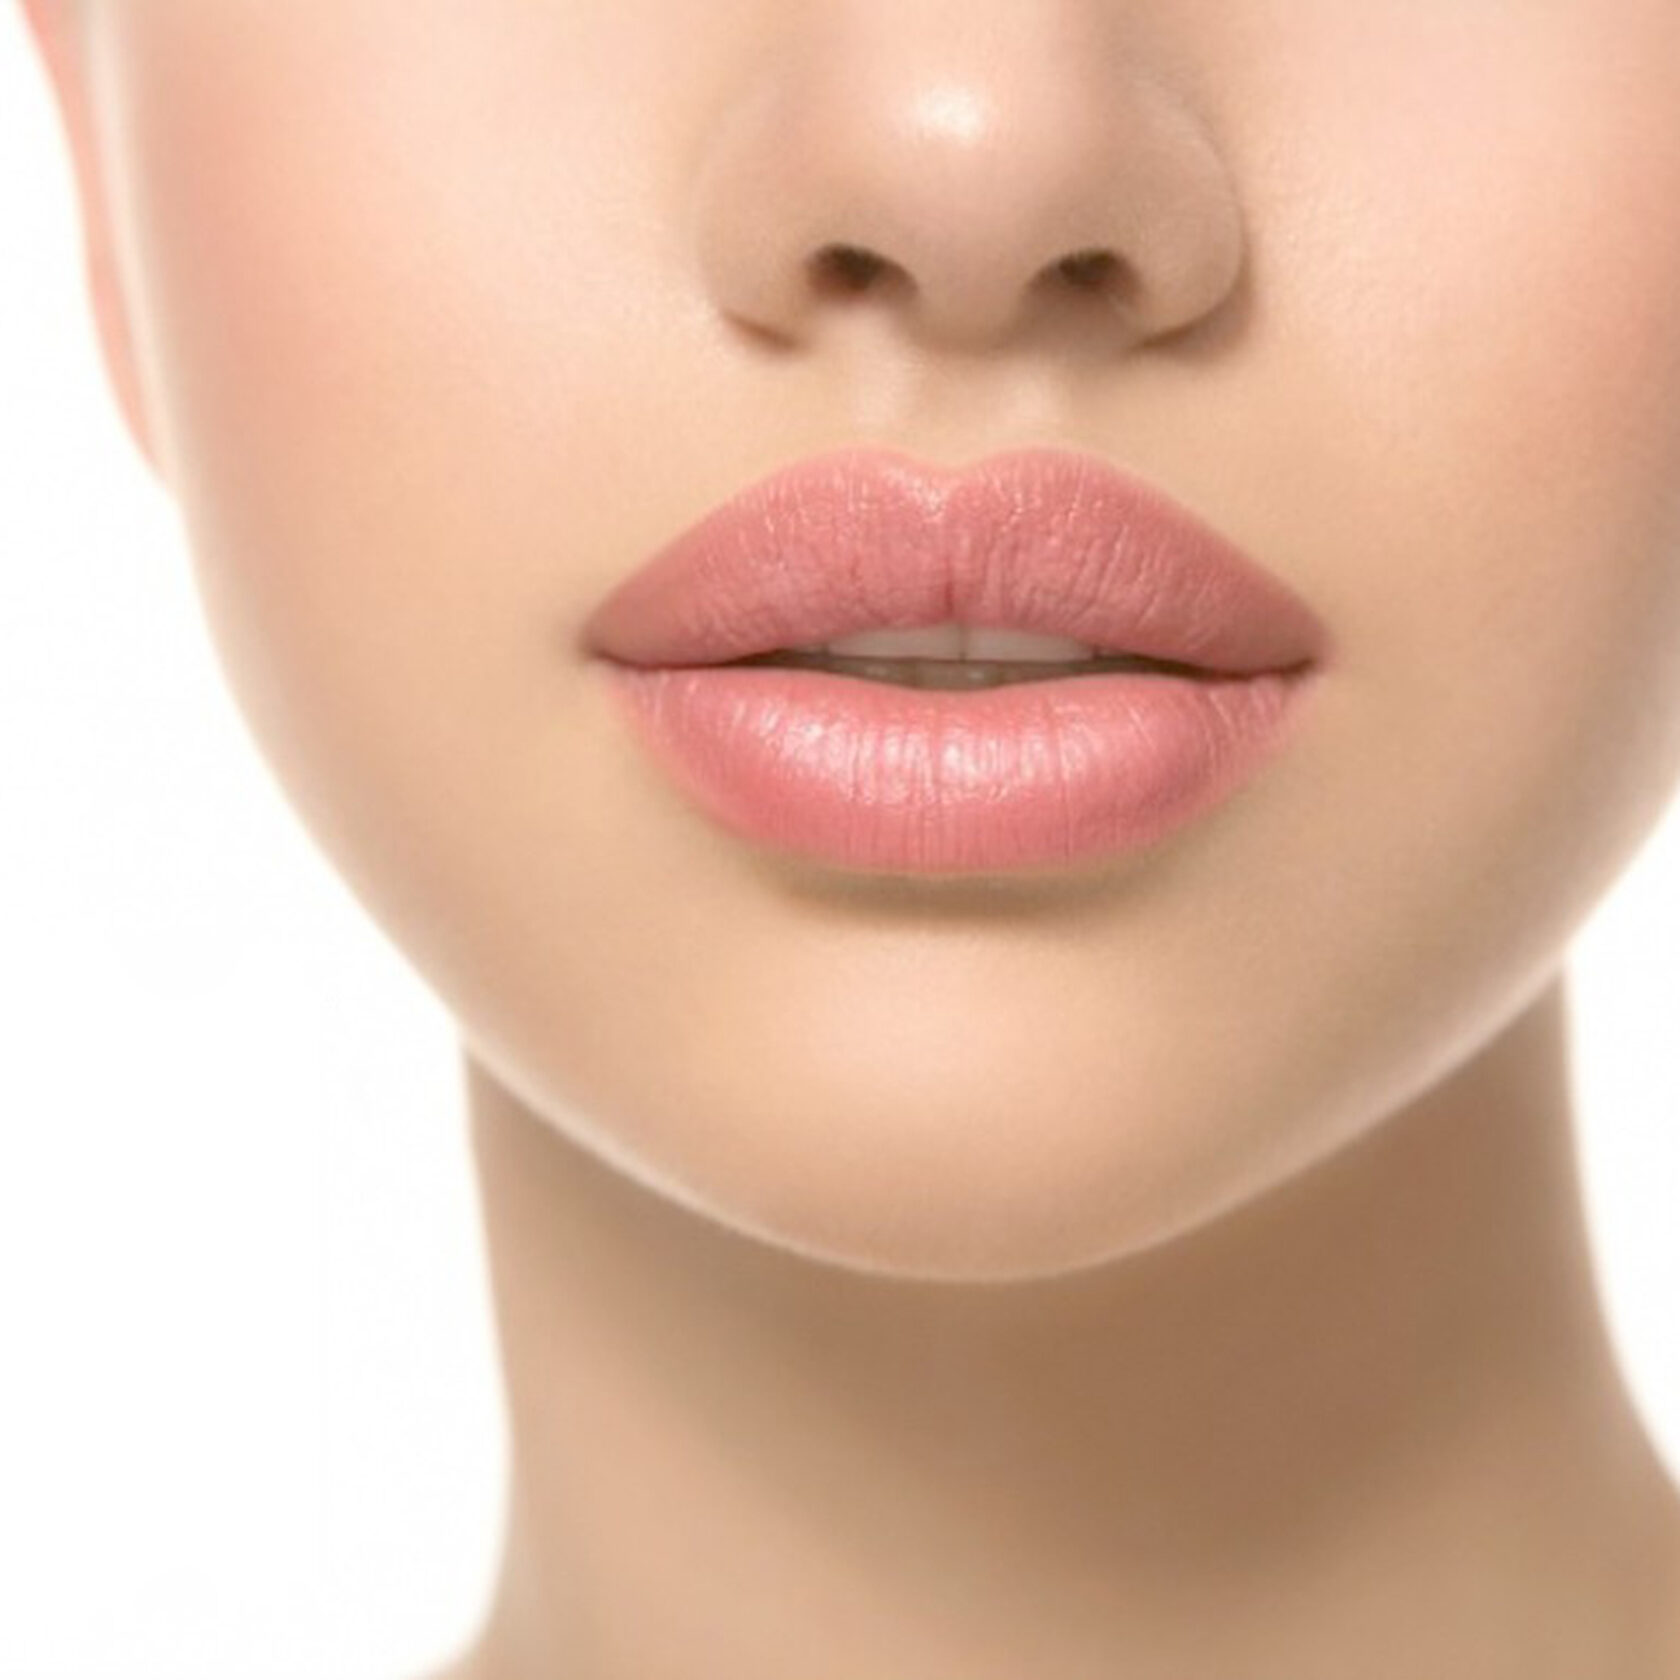 Крем контур губ. Красивая форма губ. Красивые губы. Женские губы. Красивые пухлые губы.